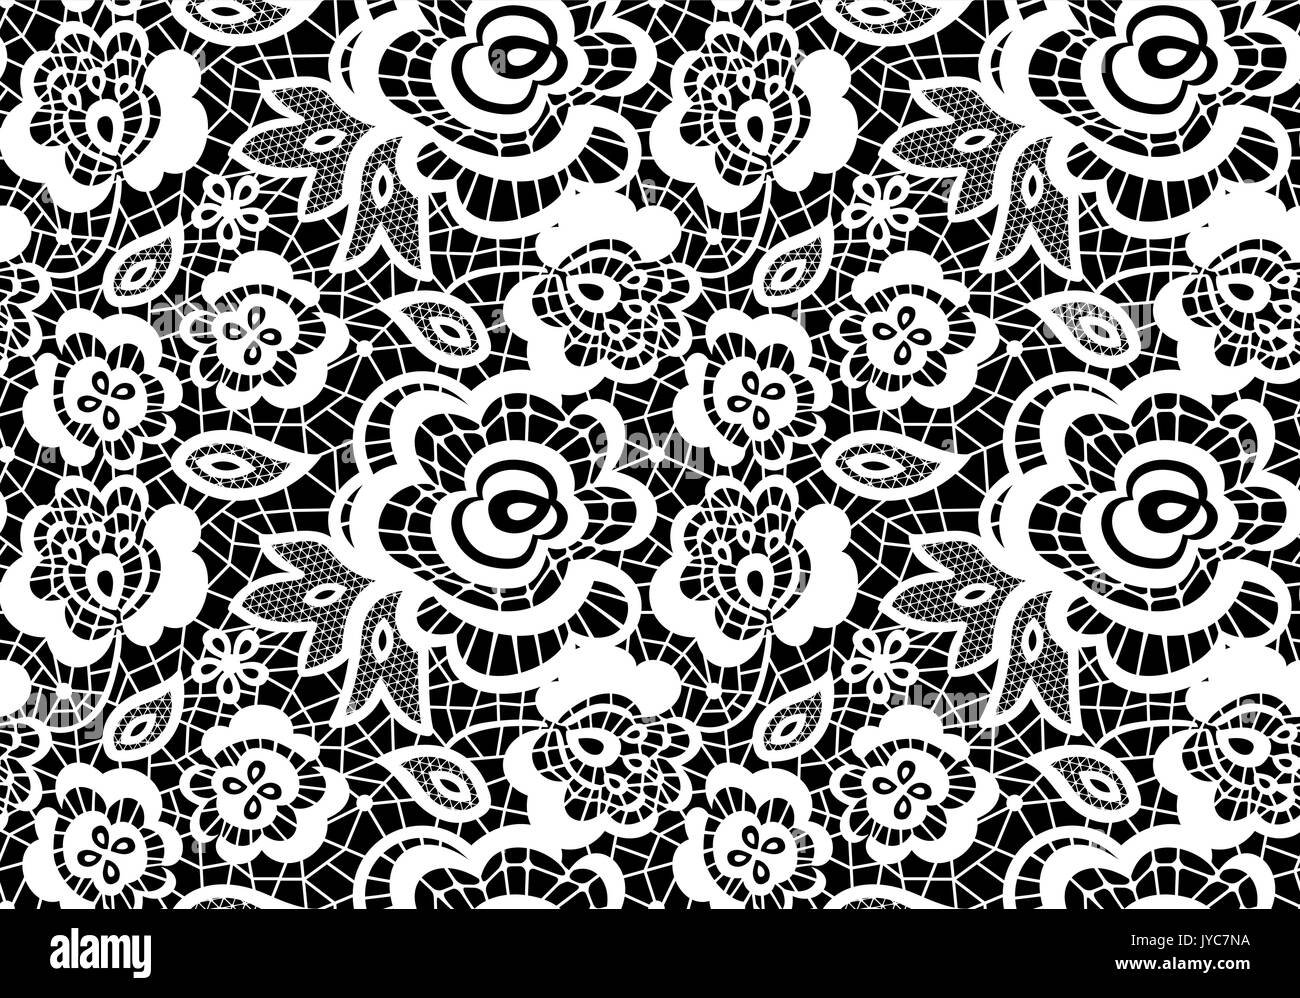 Seamless lace pattern - 58 photo